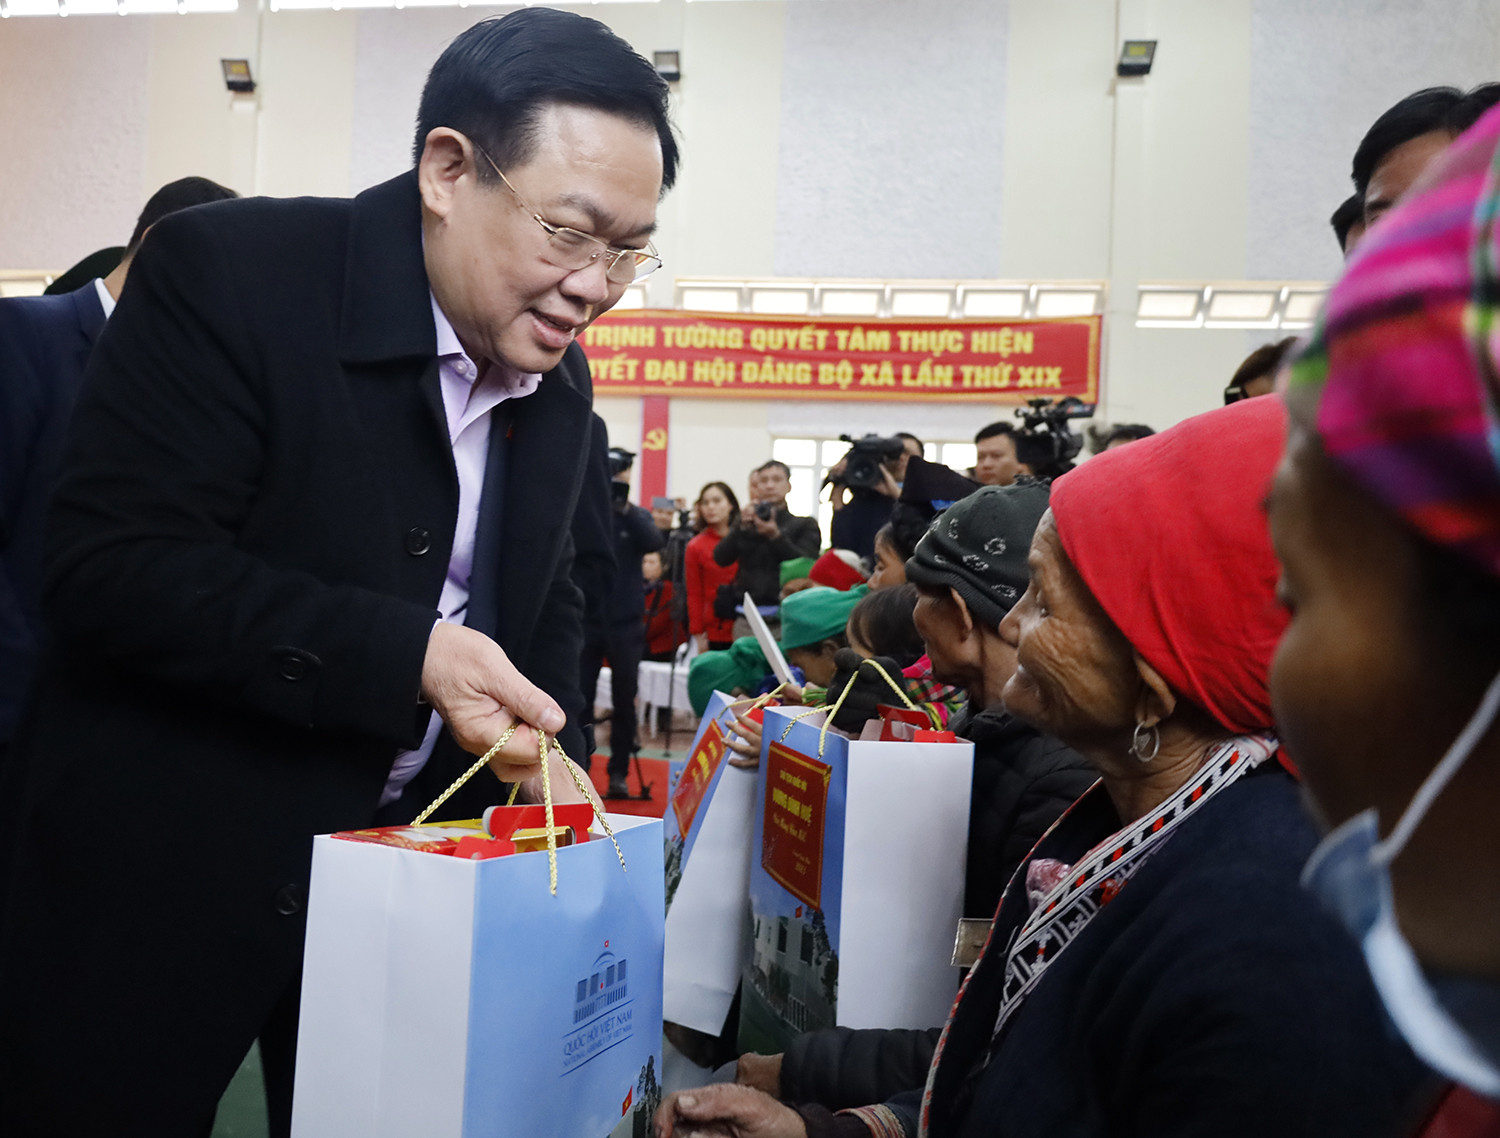 Chủ tịch Quốc hội Vương Đình Huệ: “Tết Nhân ái” tô đẹp thêm truyền thống của dân tộc